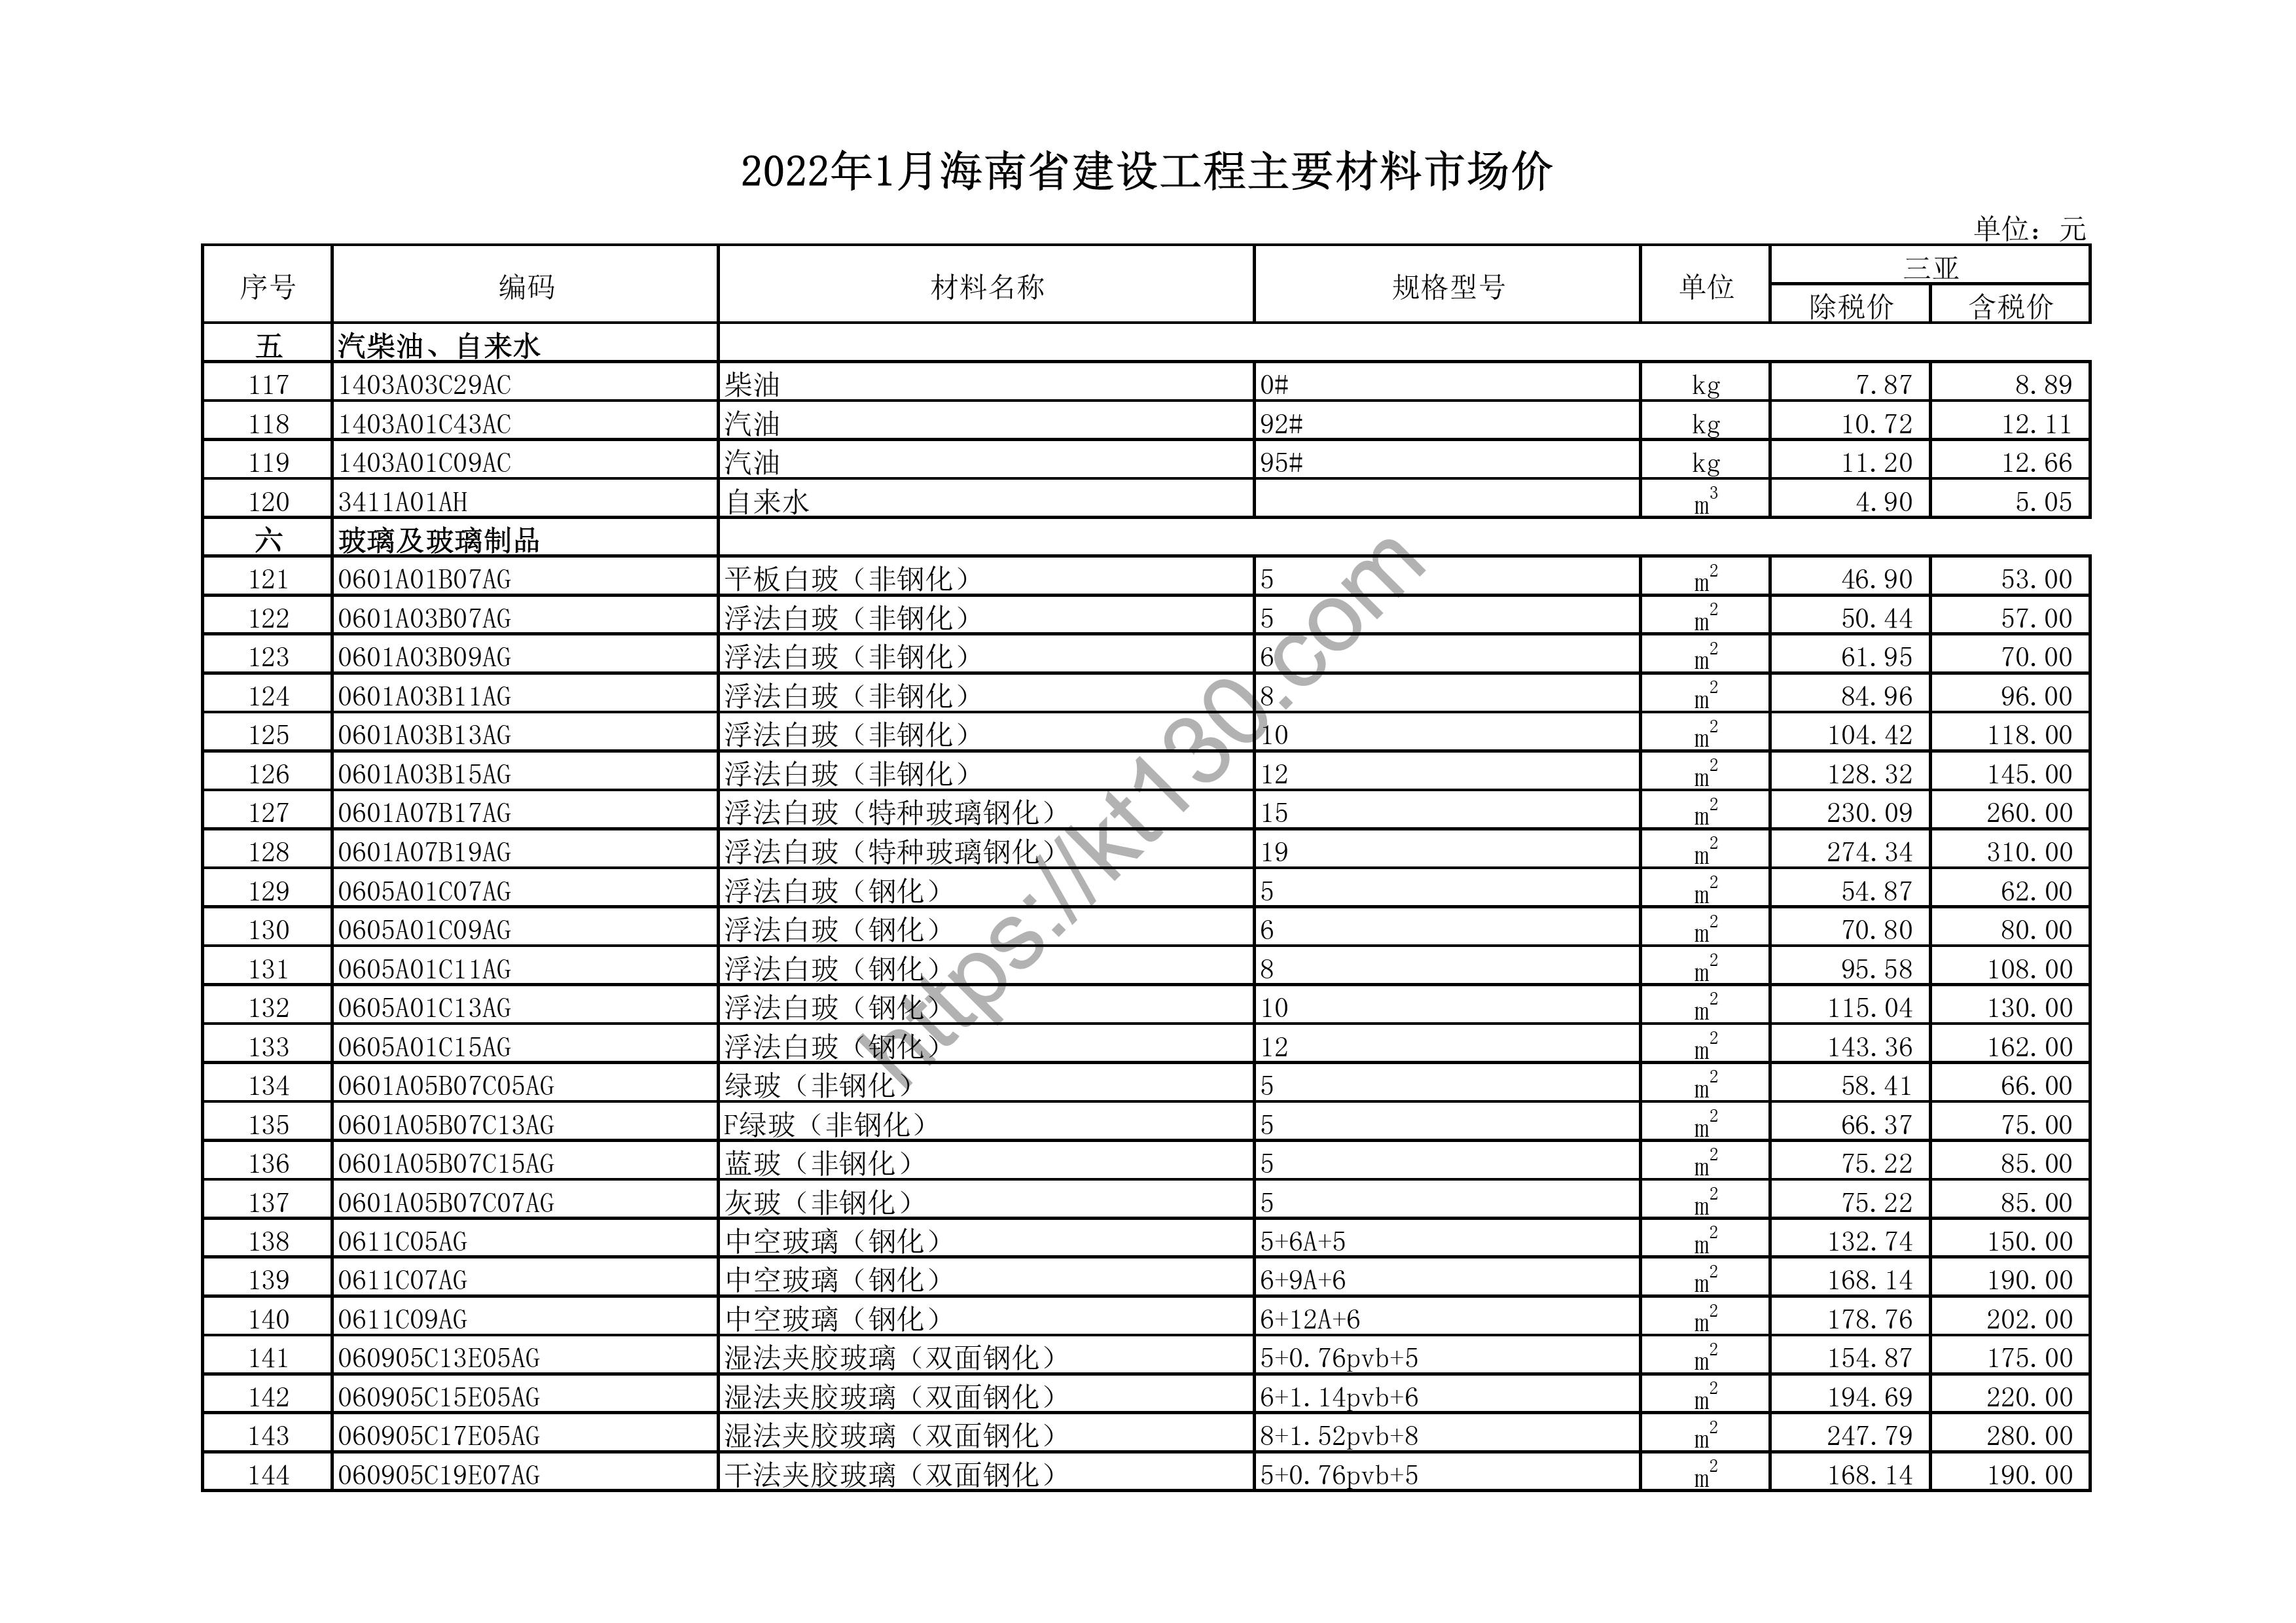 海南省2022年1月建筑材料价_汽柴油、自来水_43632